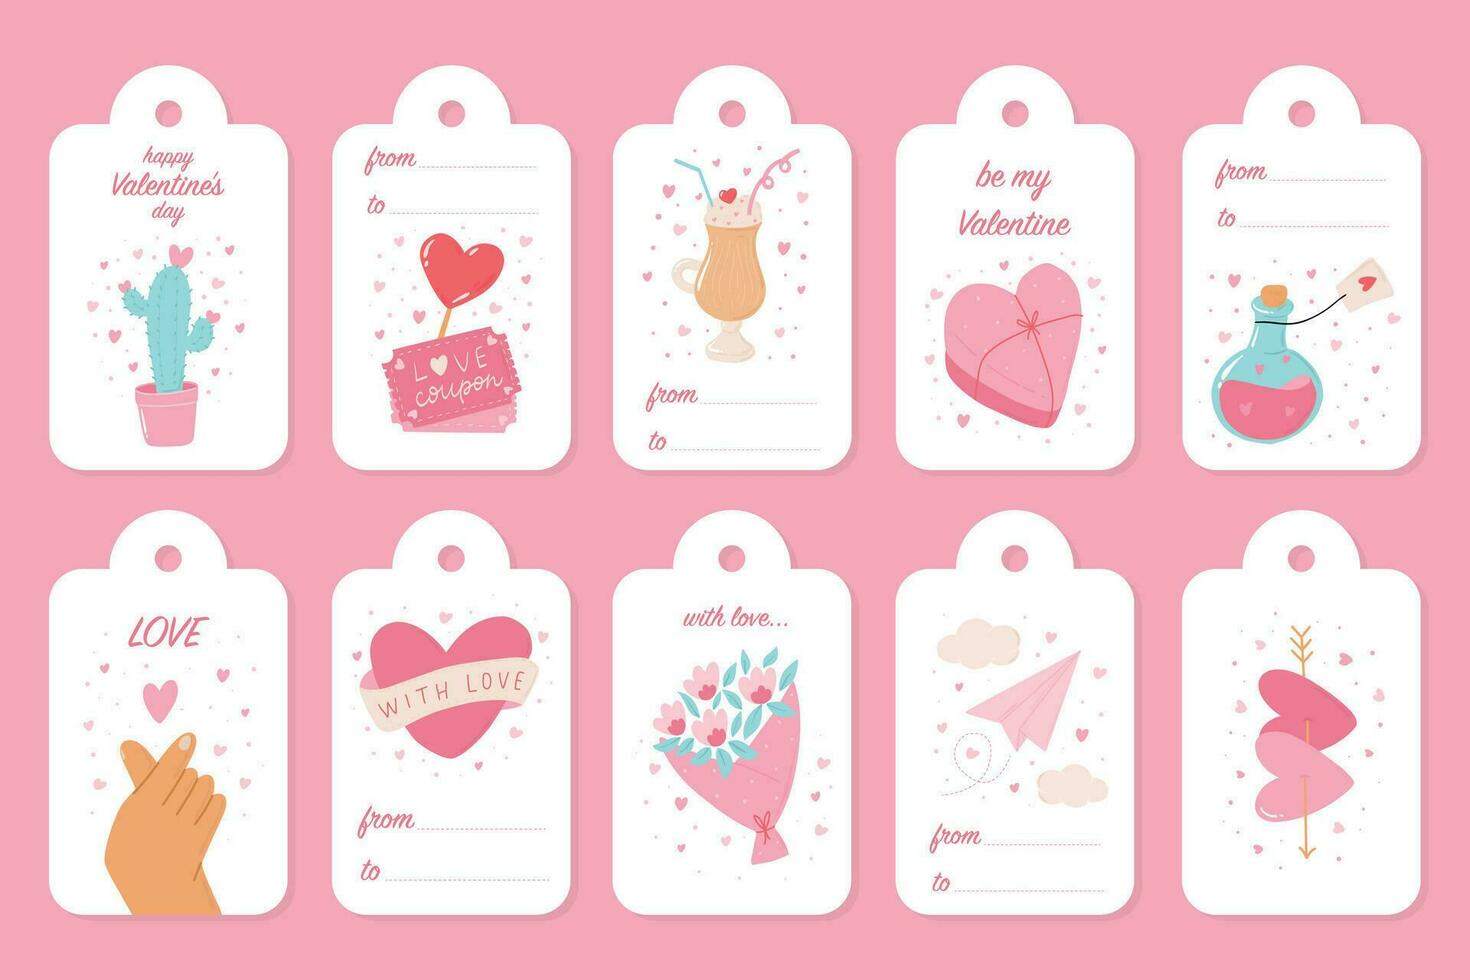 Valentijnsdag dag etiketten, tags verzameling versierd met doodles en tekst voor geschenk decor, afdrukken, stickers, kaarten, tekens, enz. eps 10 vector